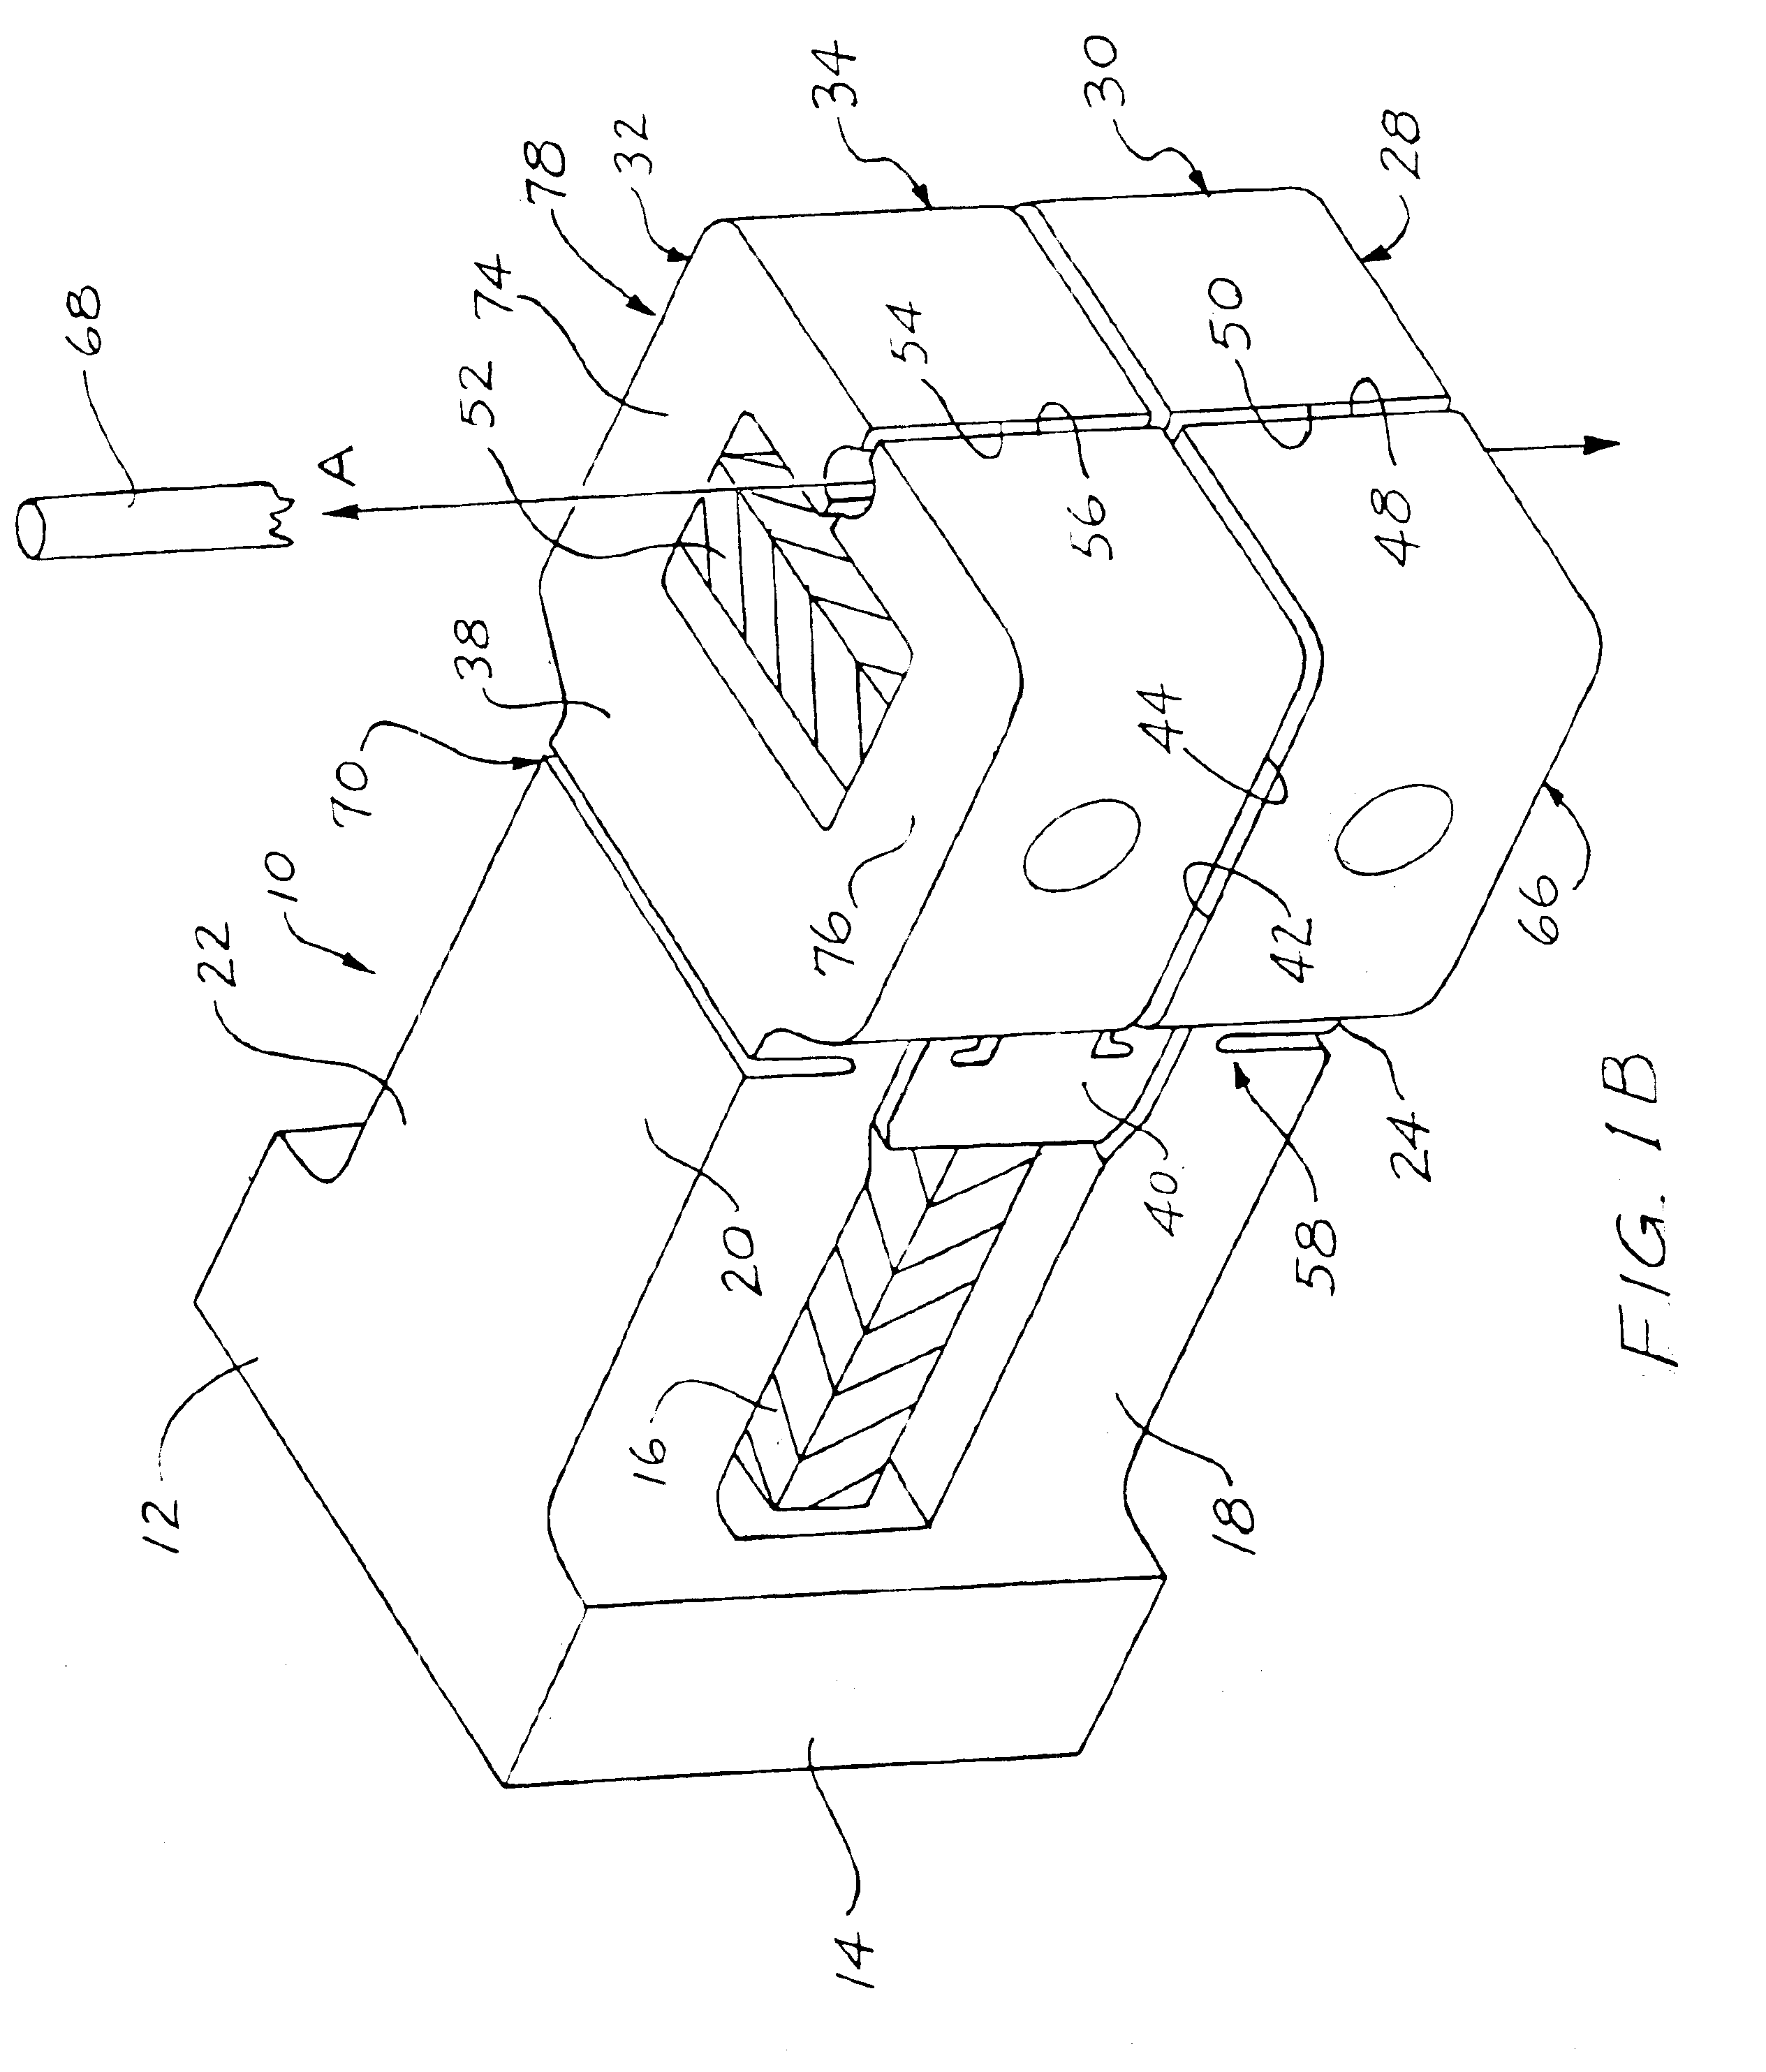 Uni-body piezoelectric motor